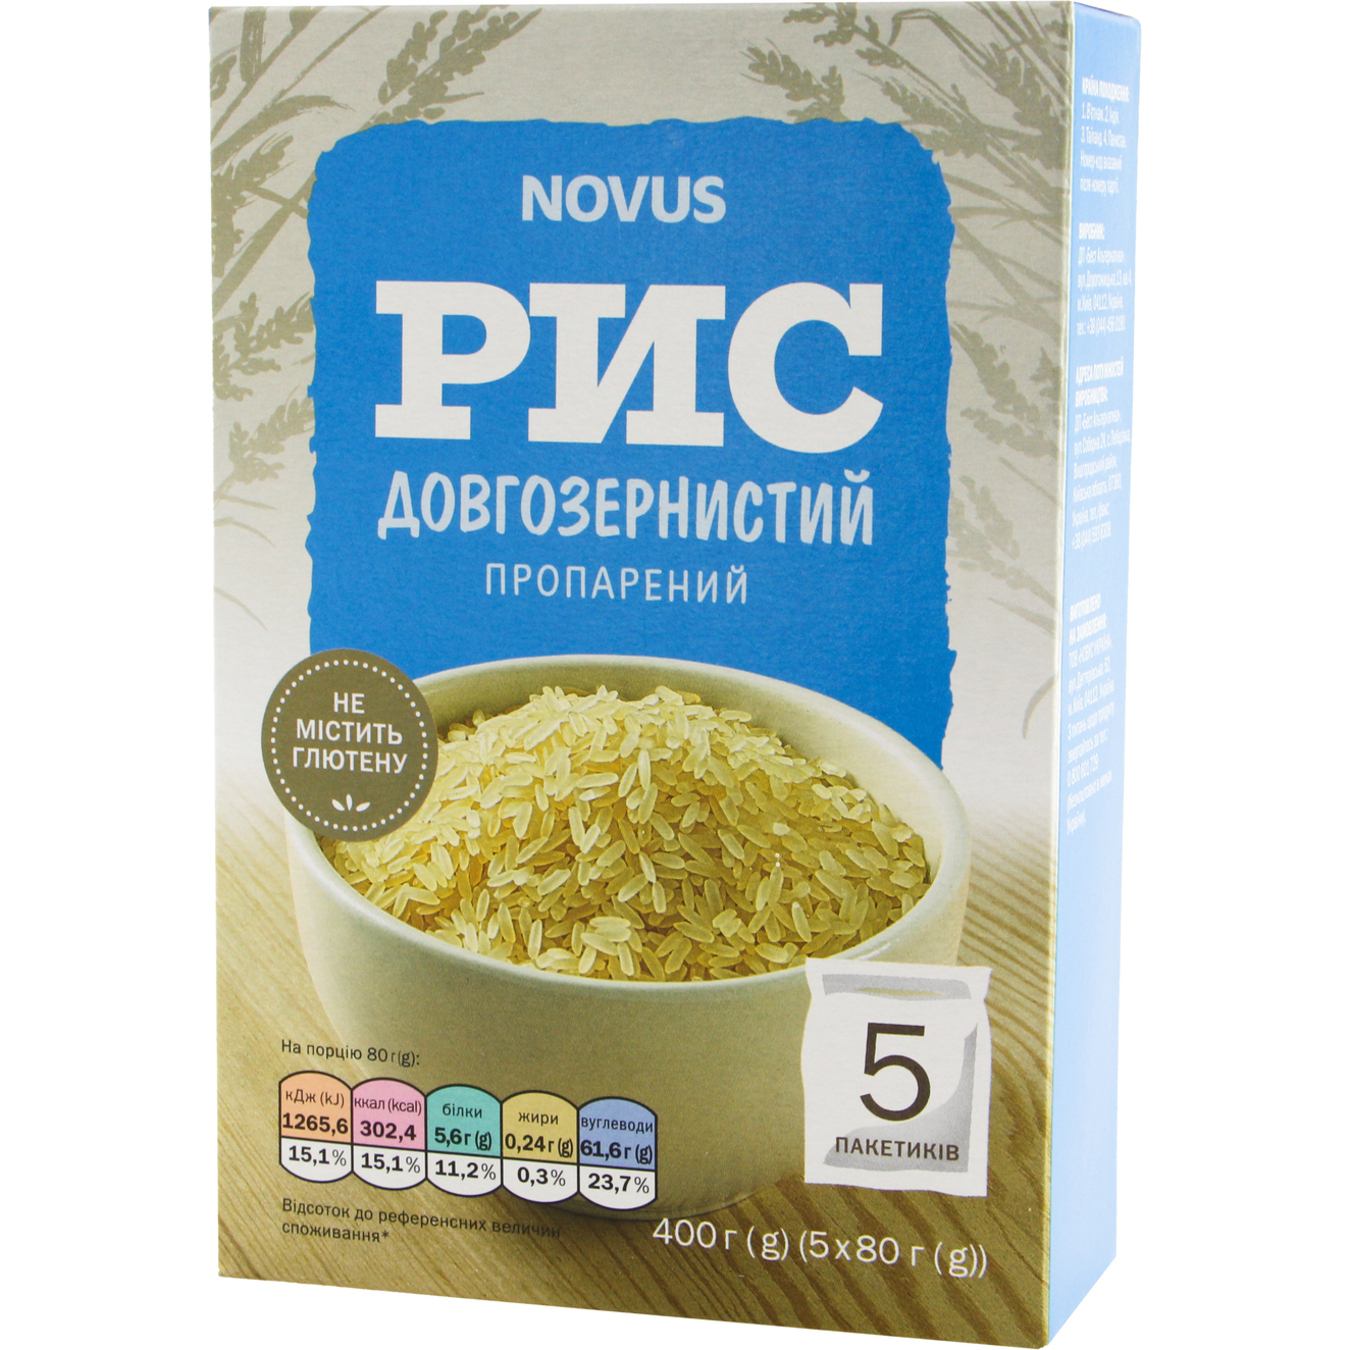 Novus Long Grain Parboiled Rice in Bags 5x80g 2